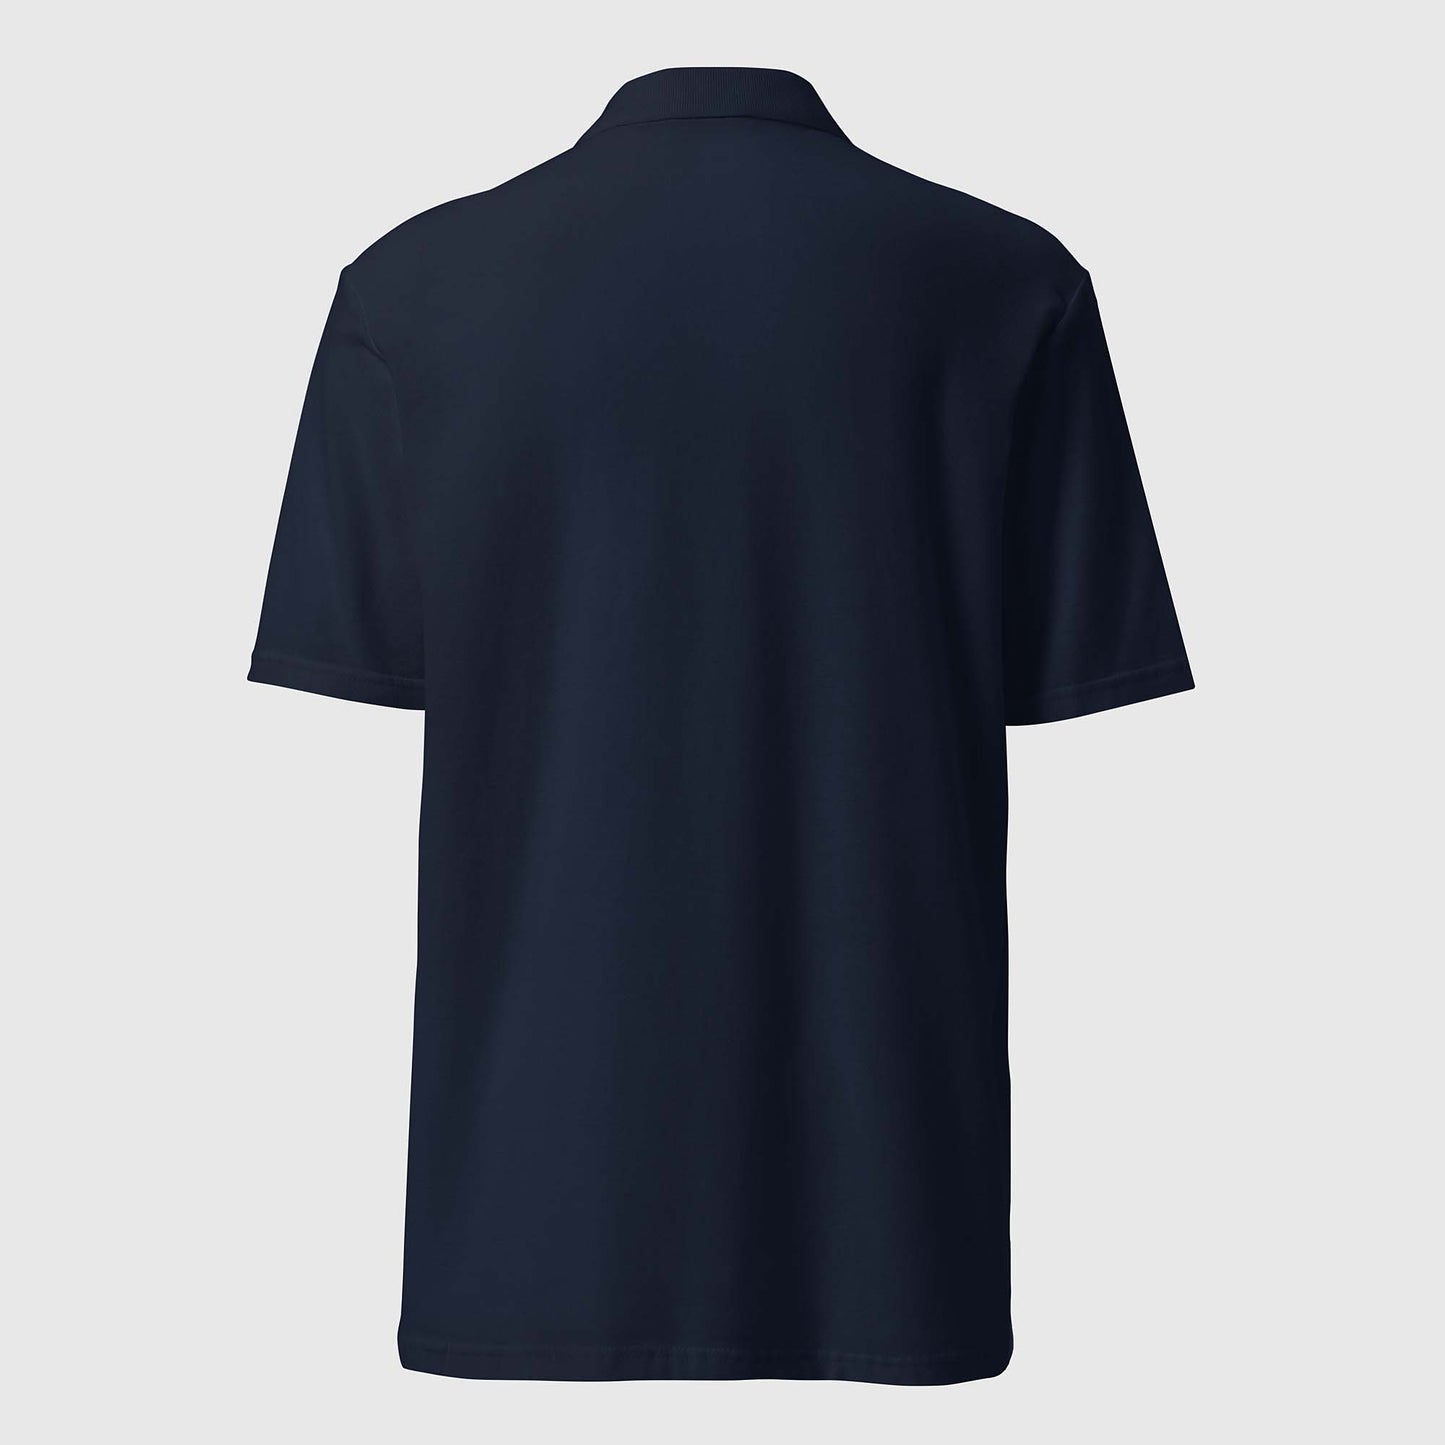 Men's navy pique polo shirt with embroidered 2269 logo